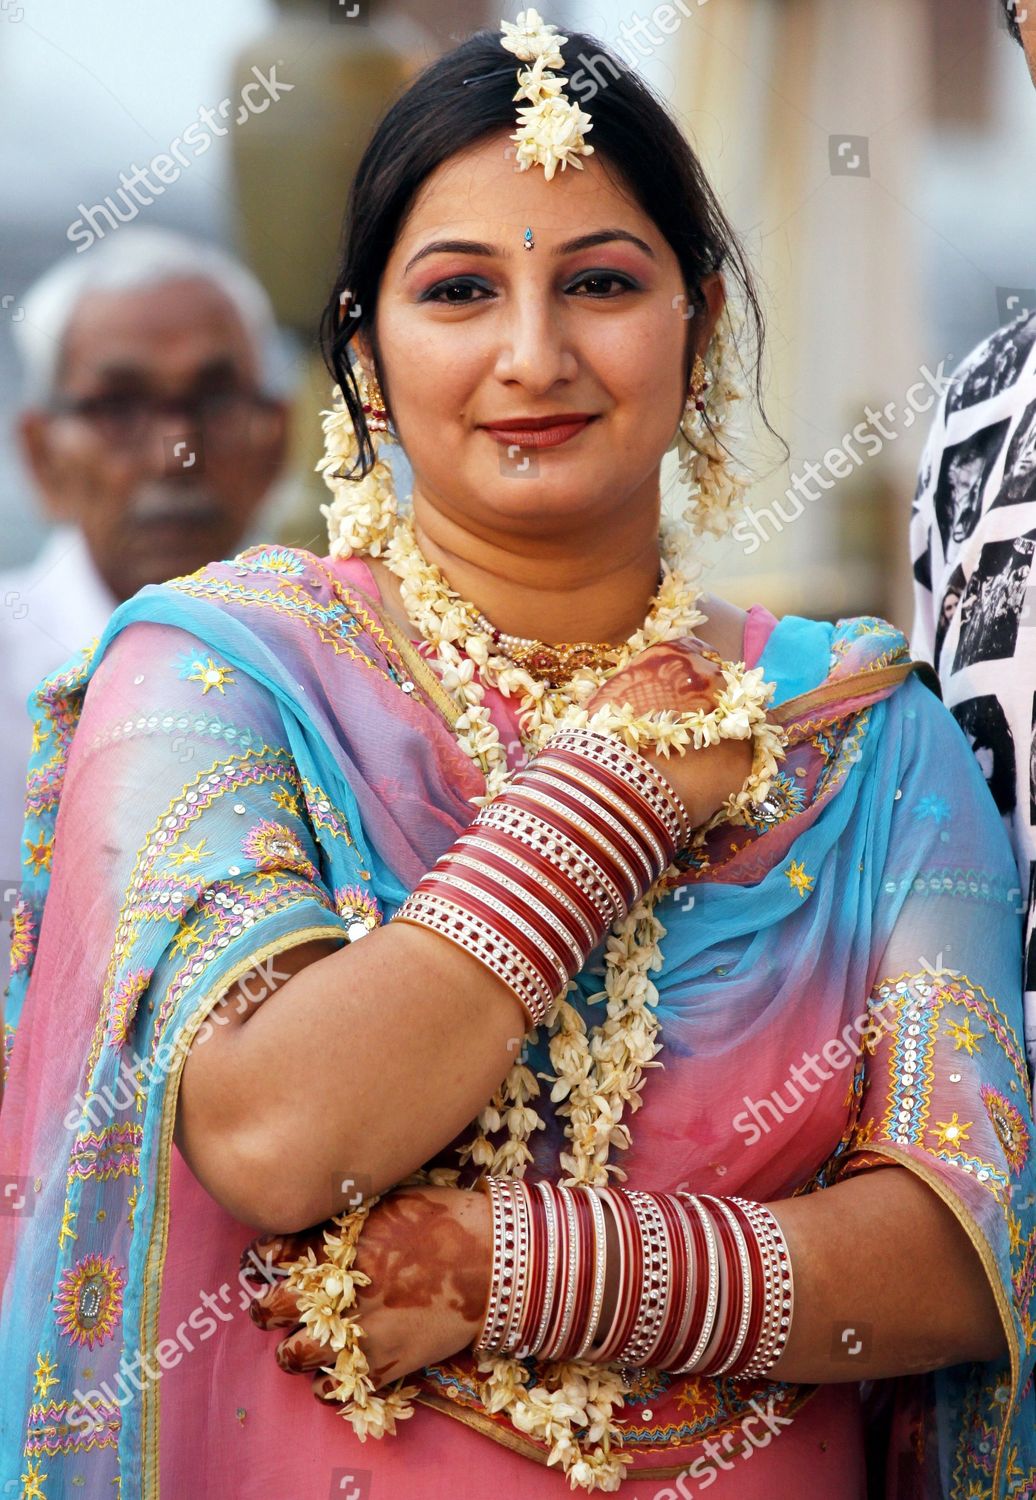 Raminder Pal Singh/EPA/ShutterstockNewly Married Indian Woman Wears